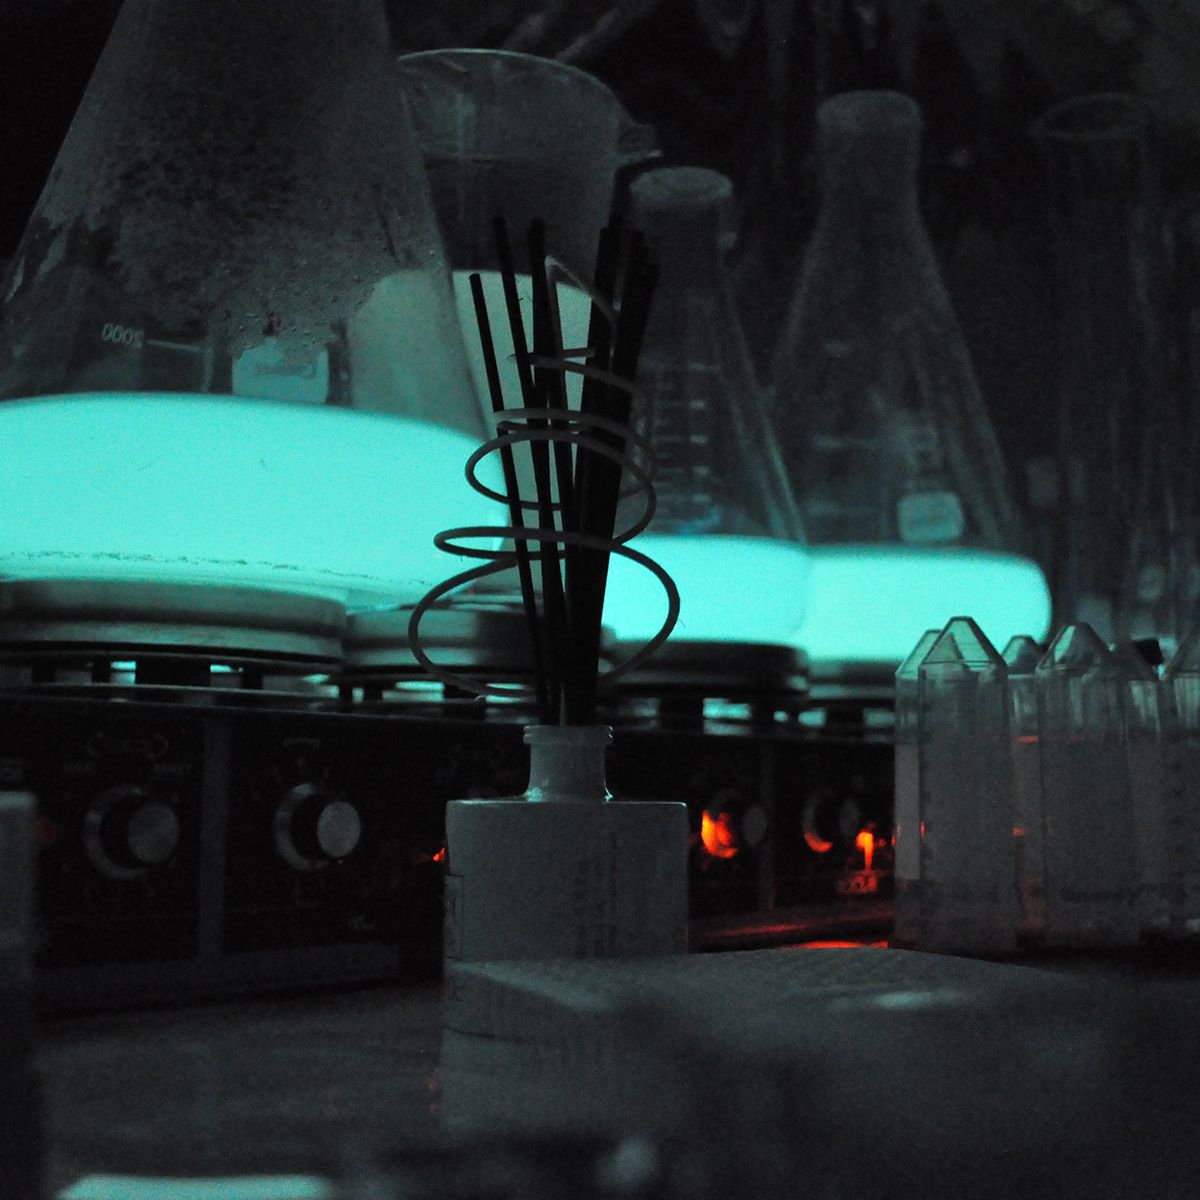 Les bactéries bioluminescentes cultivées en laboratoire par Glowee, GLOWEE, Ariane Schwab, FranceInfo